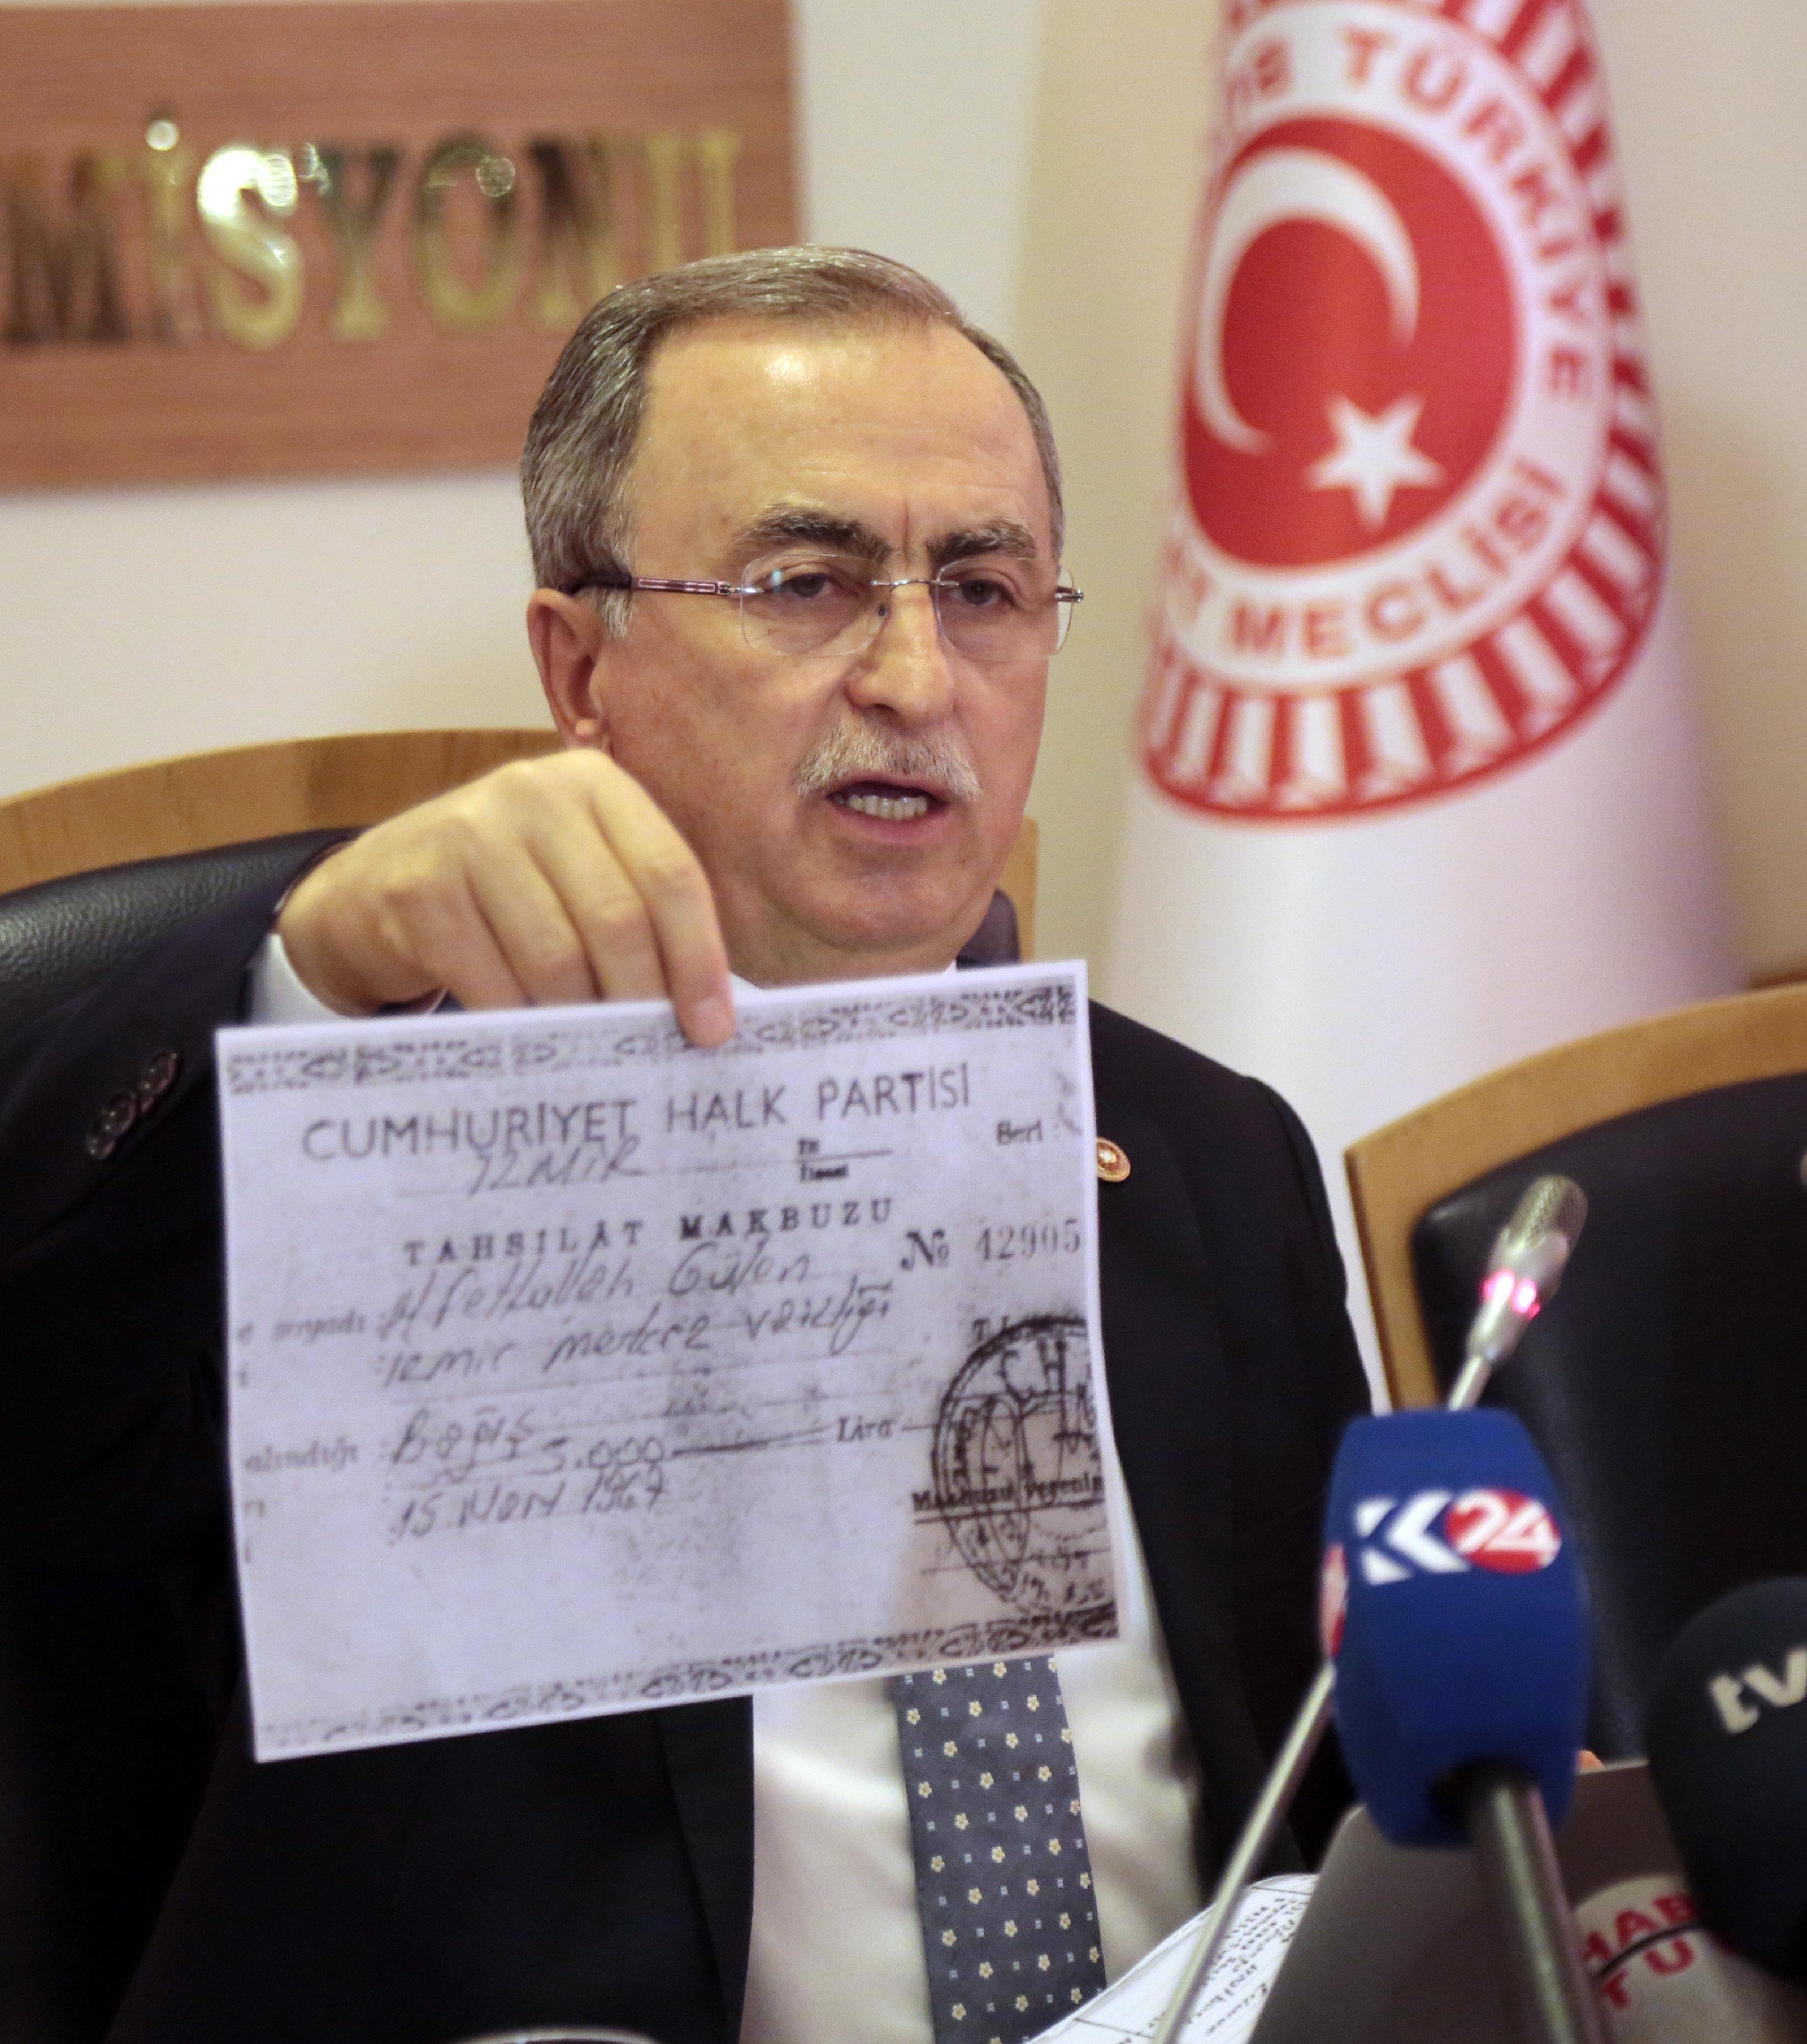 Aykut Erdoğdudan Gülen CHPye bağış yaptı iddiasına yalanlama